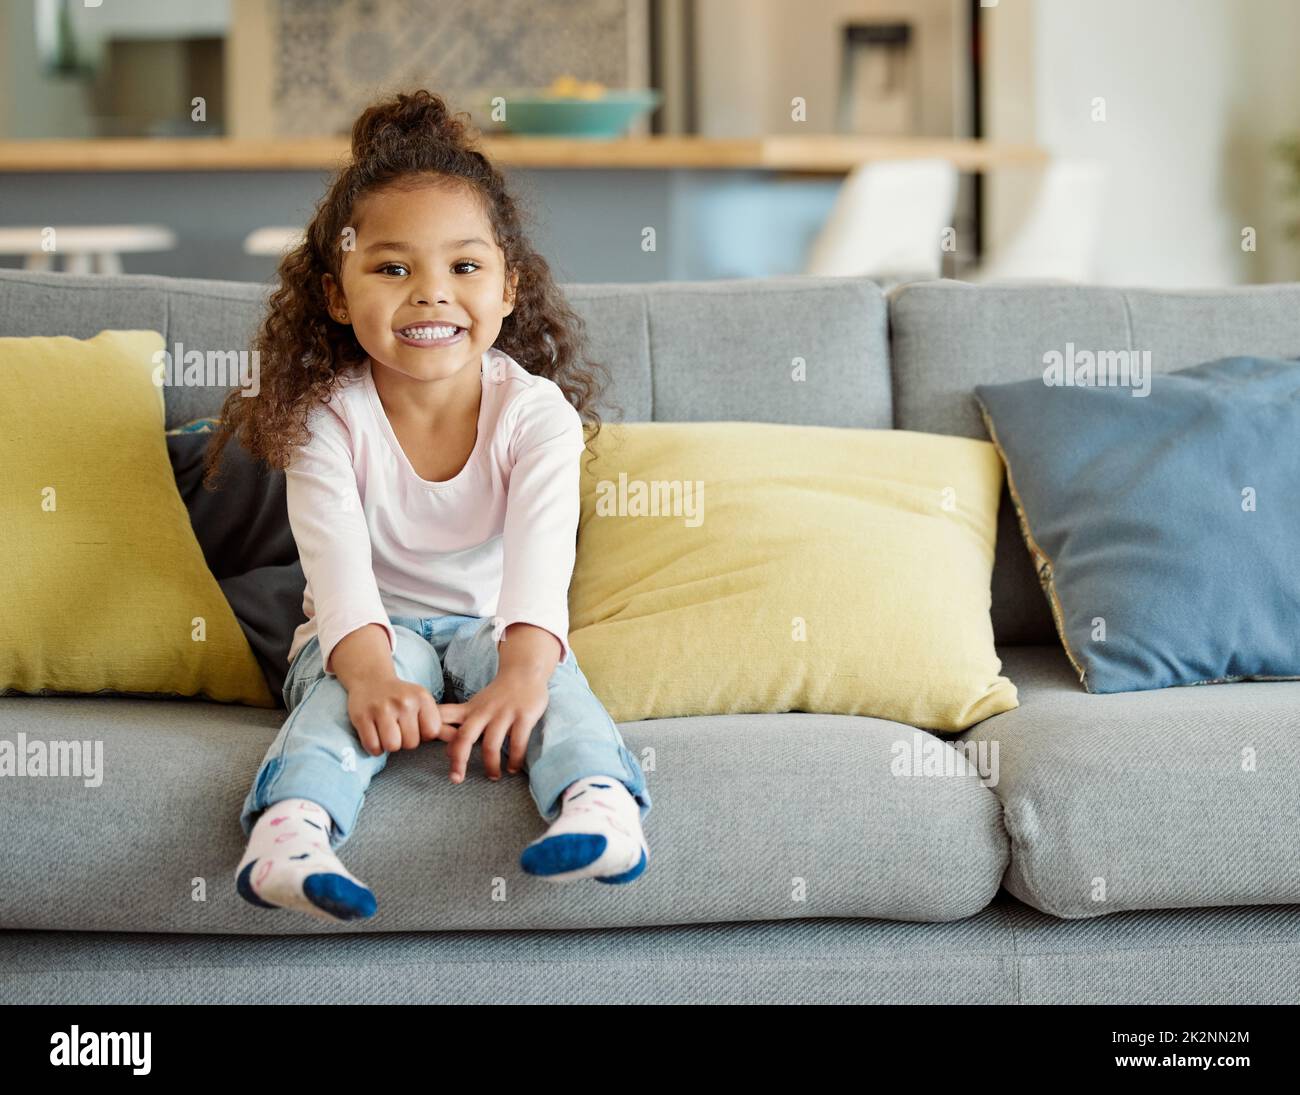 Sie liebt Wochenenden auf der Couch. Porträt eines kleinen Mädchens, das zu Hause auf dem Sofa sitzt. Stockfoto